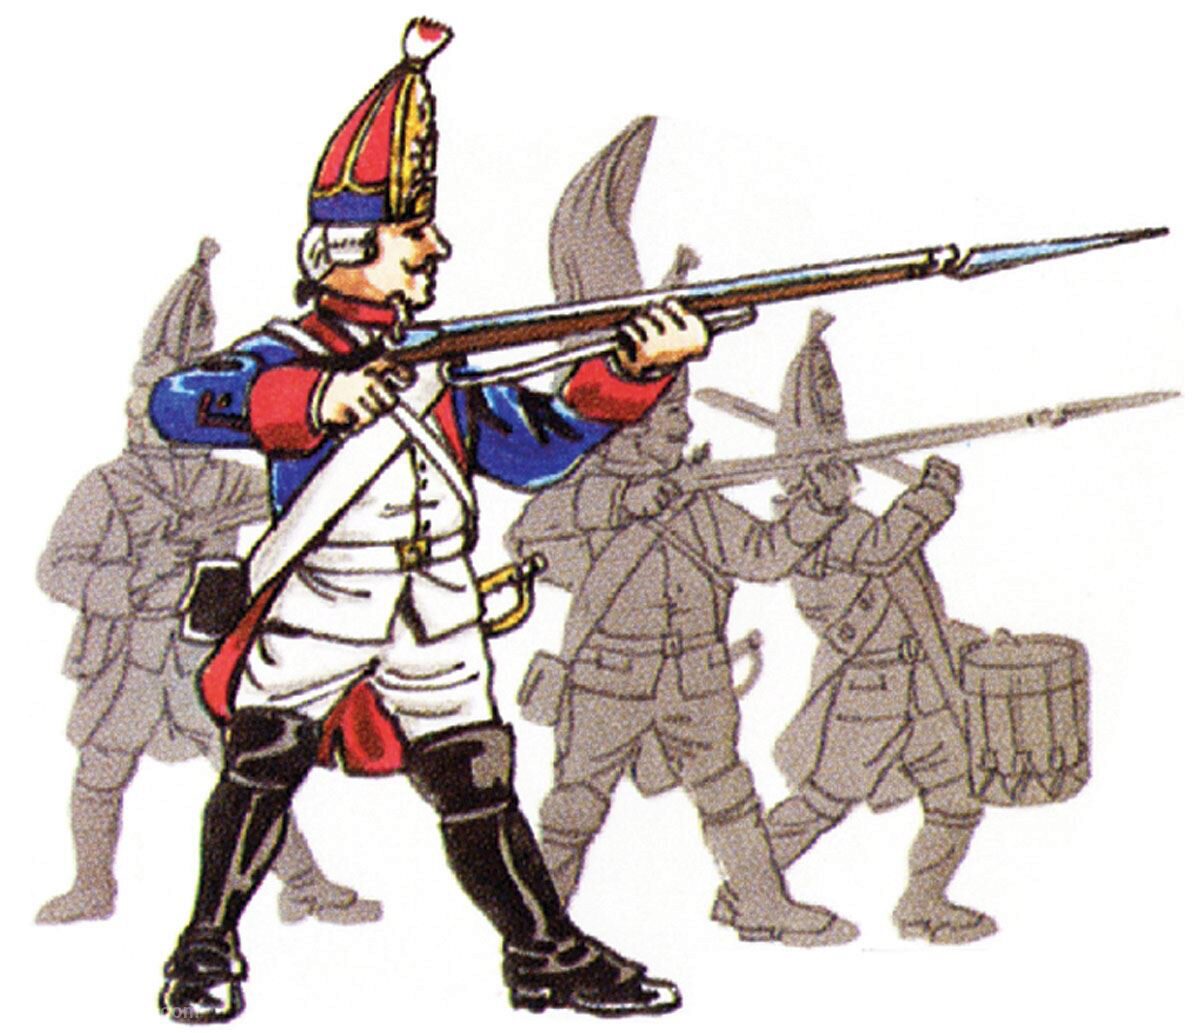 Prince August 66 Zinngiessform Battle of Rossbach - Prussia Grenadier Stehend schießend Preußen  1757